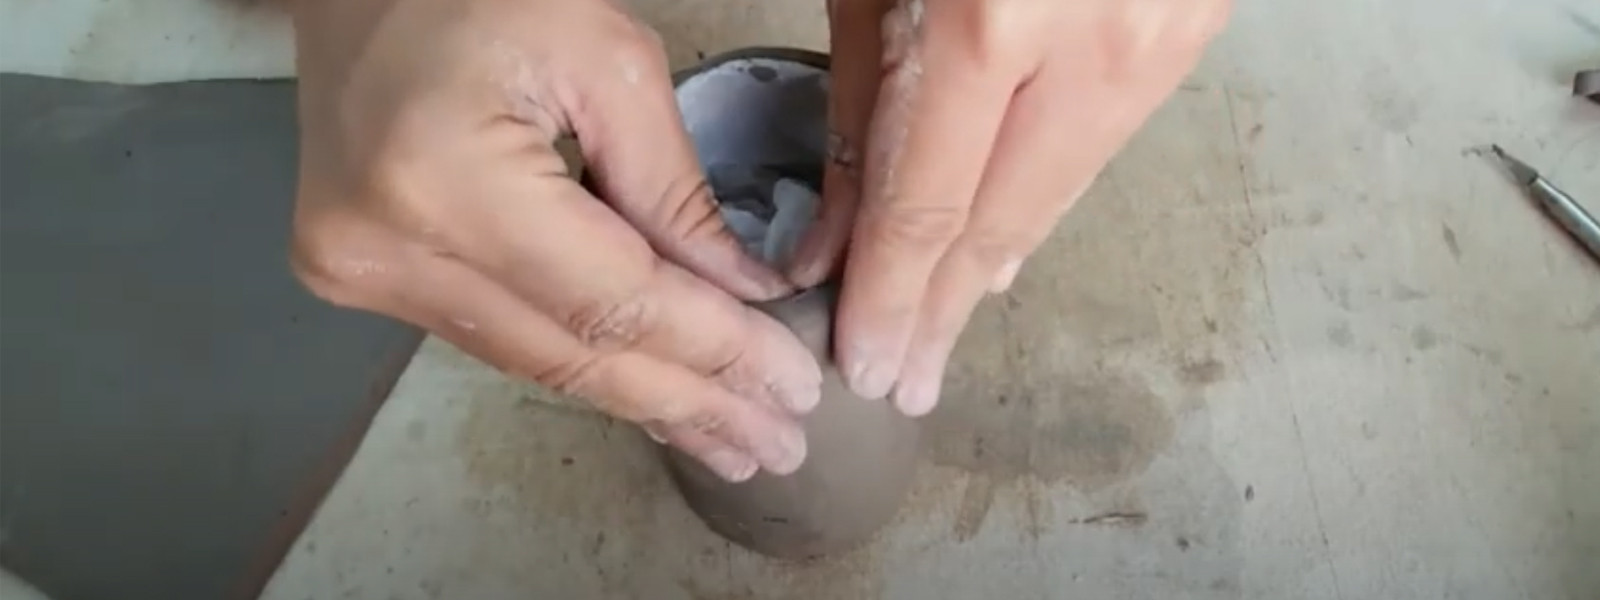 Tutorials - Basic Hand Techniques in Ceramics 